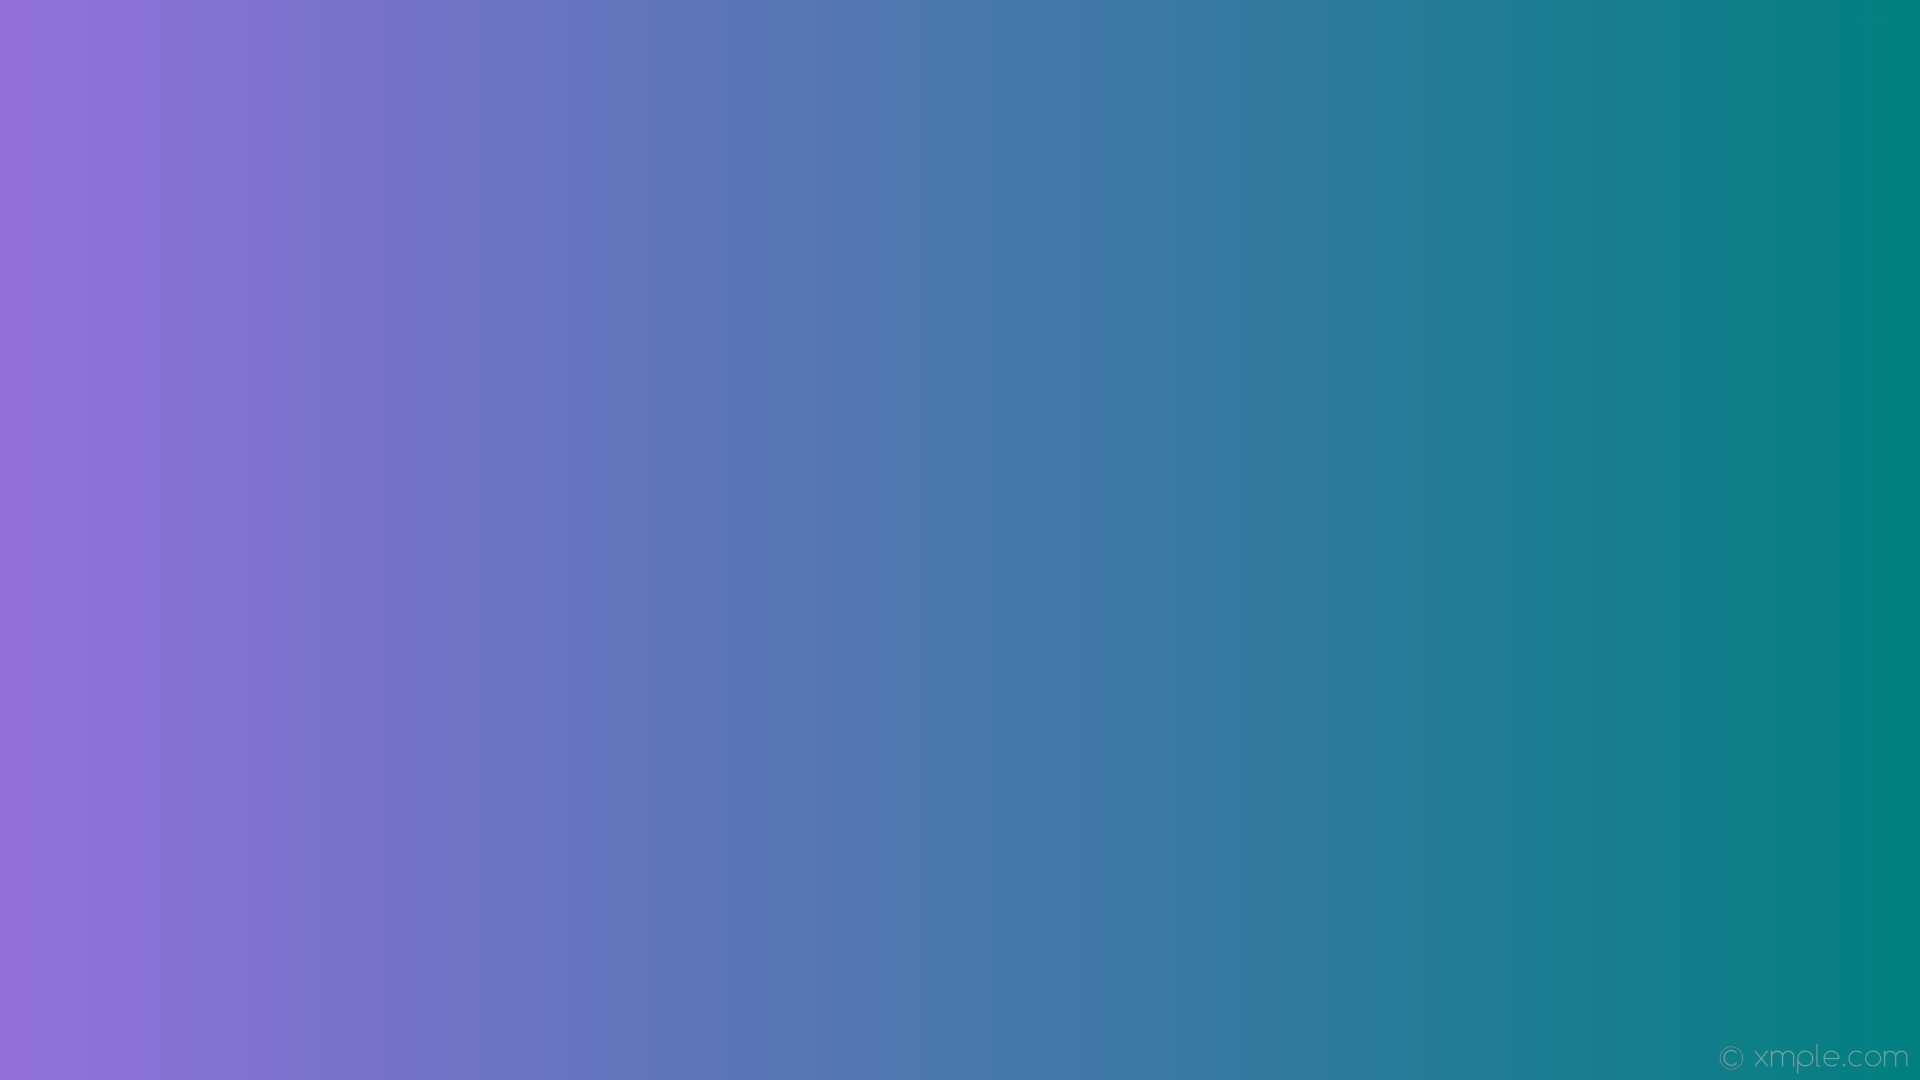 1920x1080 wallpaper green purple gradient linear teal medium purple #008080 #9370db 0Â°